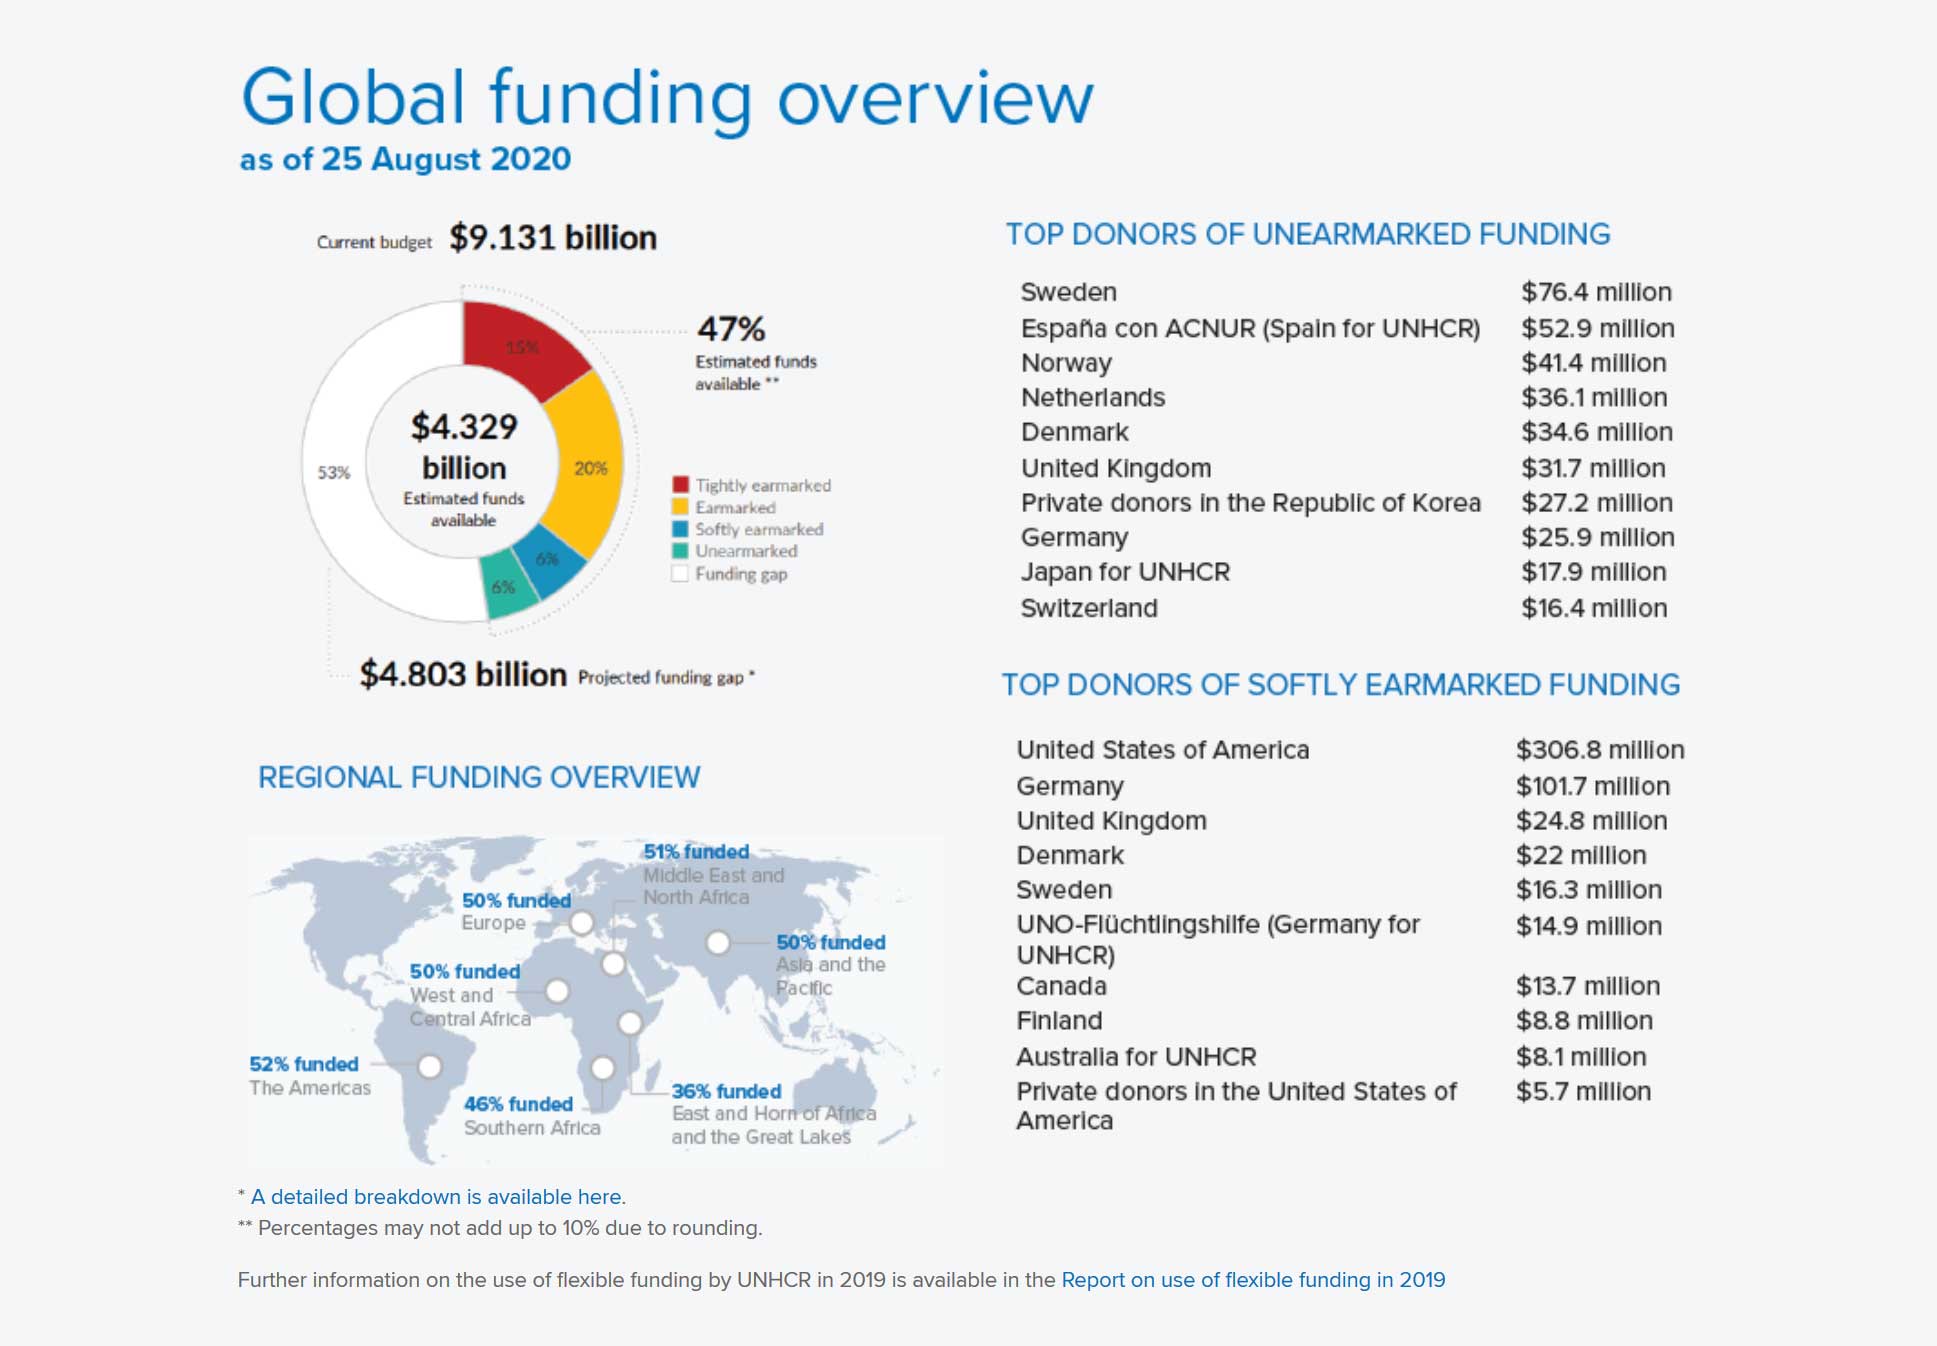 Übersicht der UNHCR-Unterfinanzierung